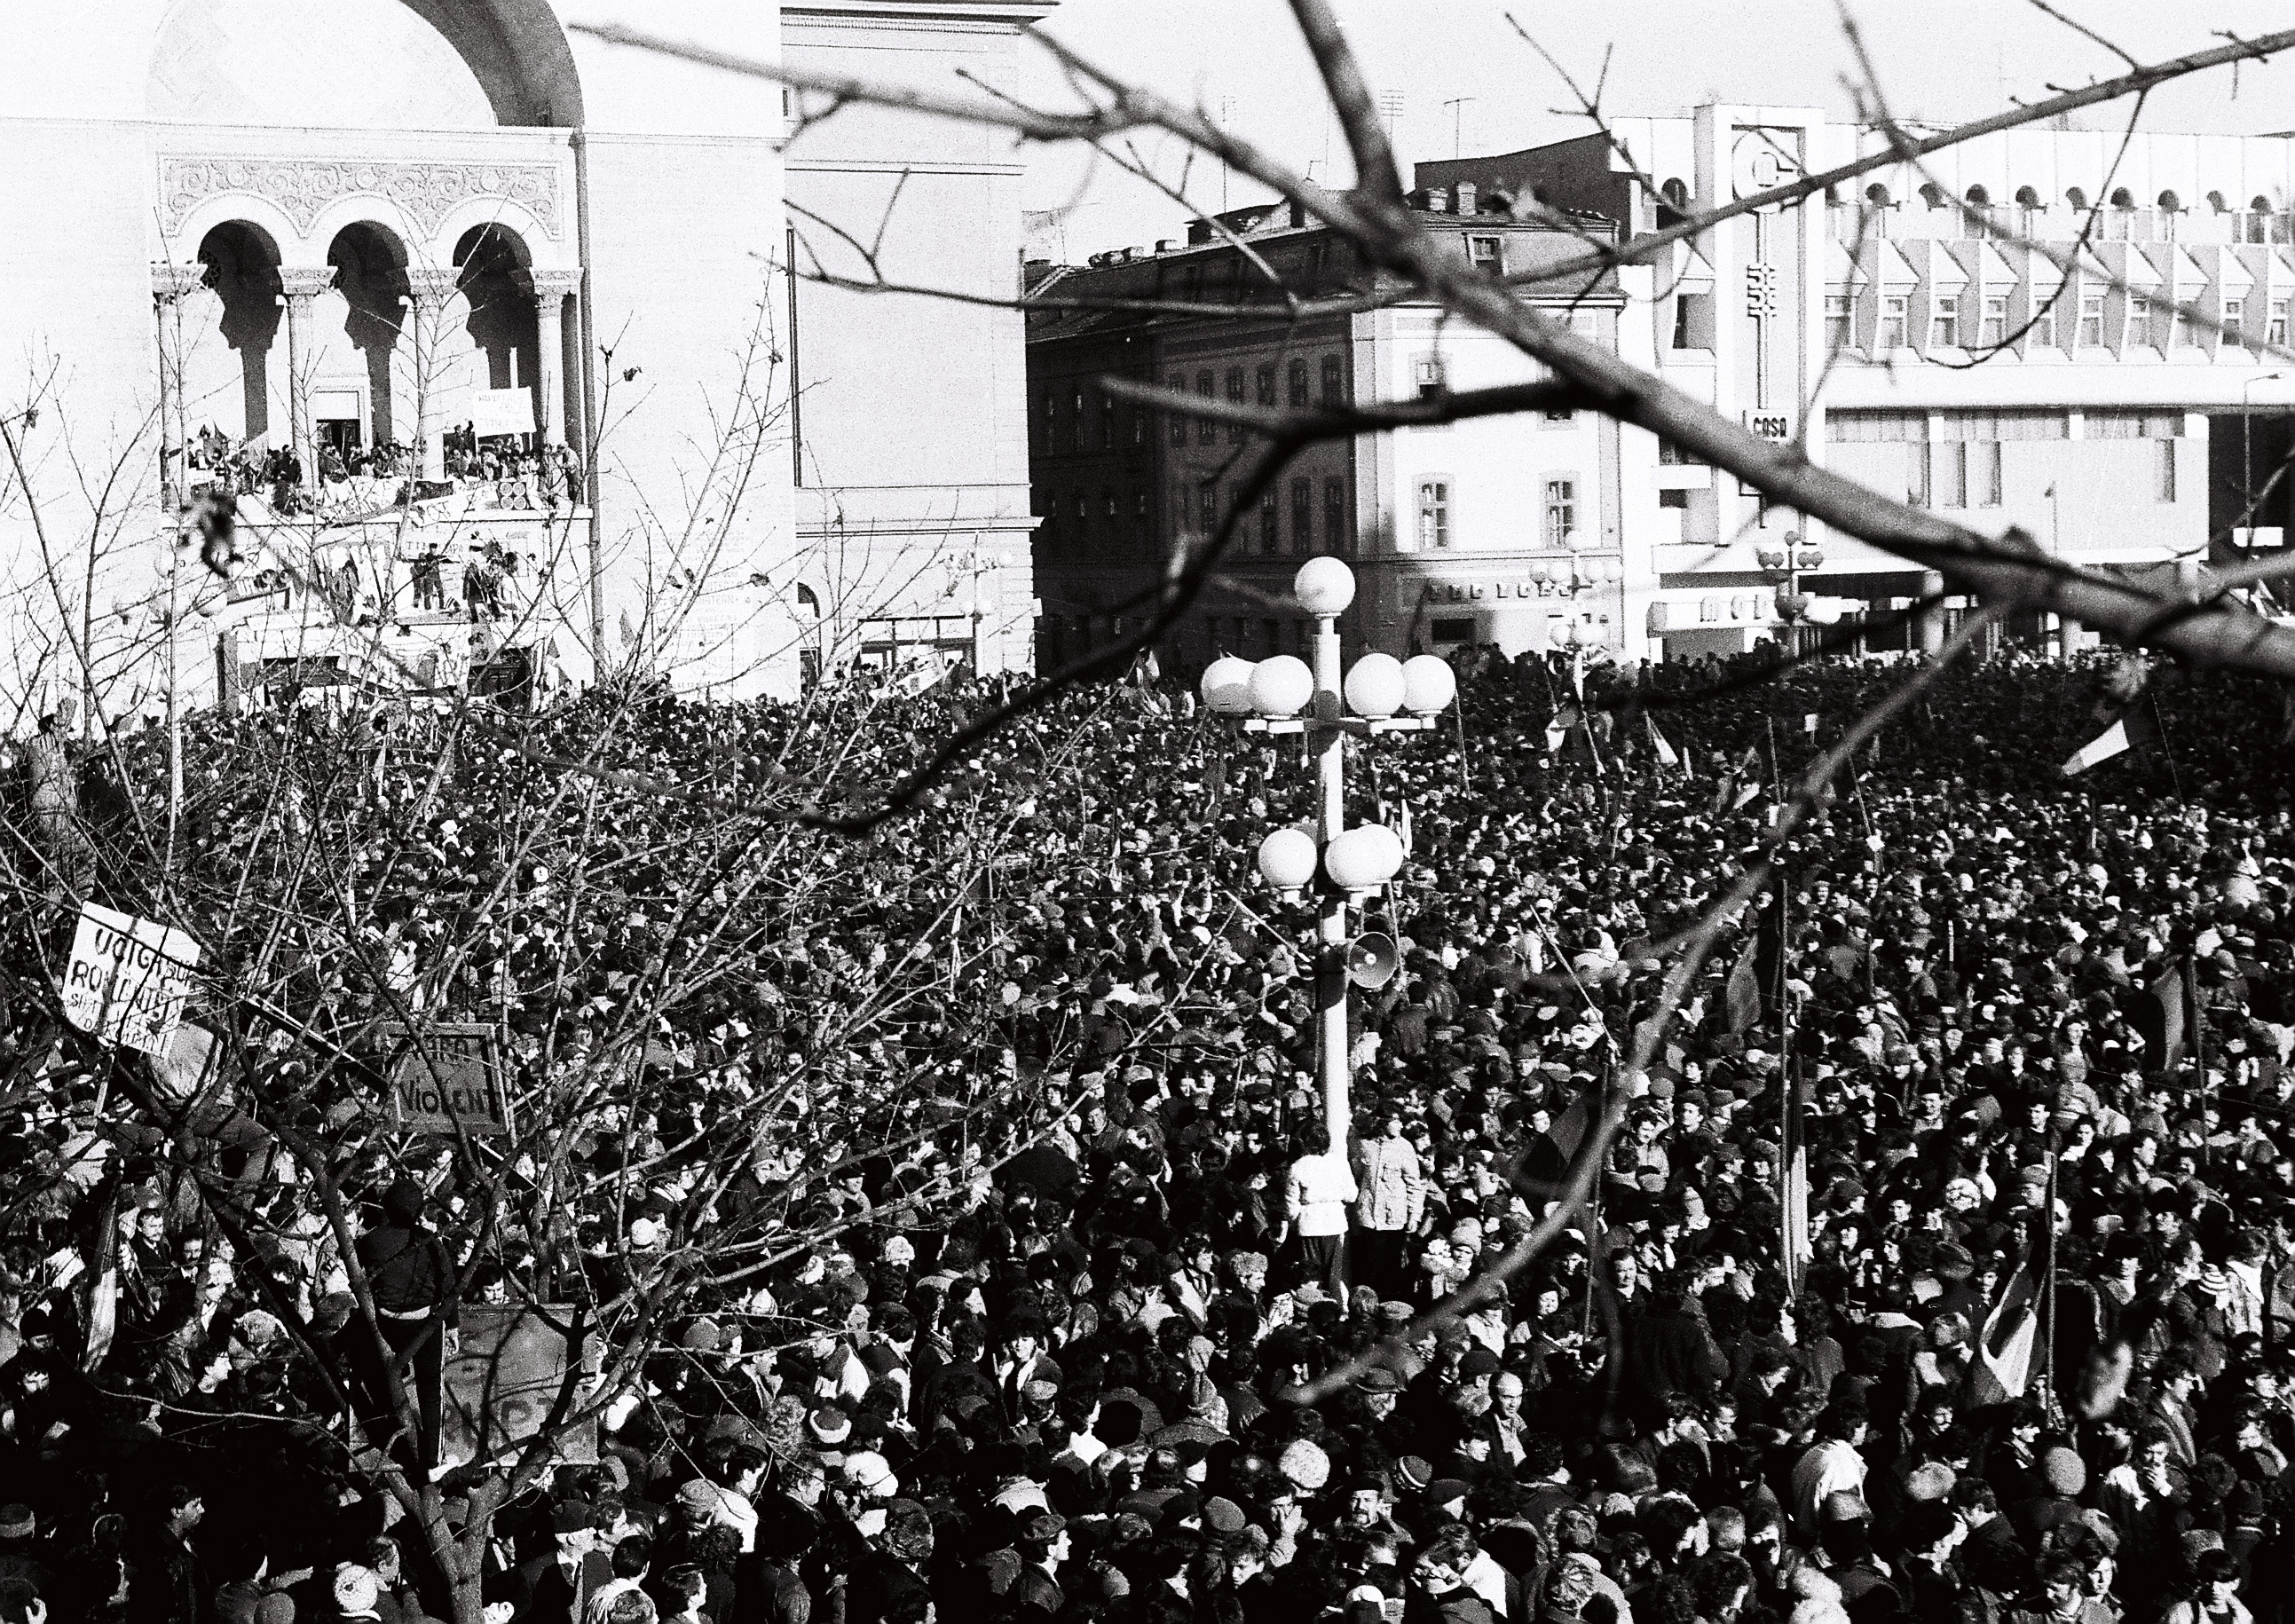 Istoria Revoluţiei: 16 decembrie 1989 - prima zi de ieşiri masive în stradă. La Timişoara s-a strigat pentru prima dată "Jos Ceauşescu"